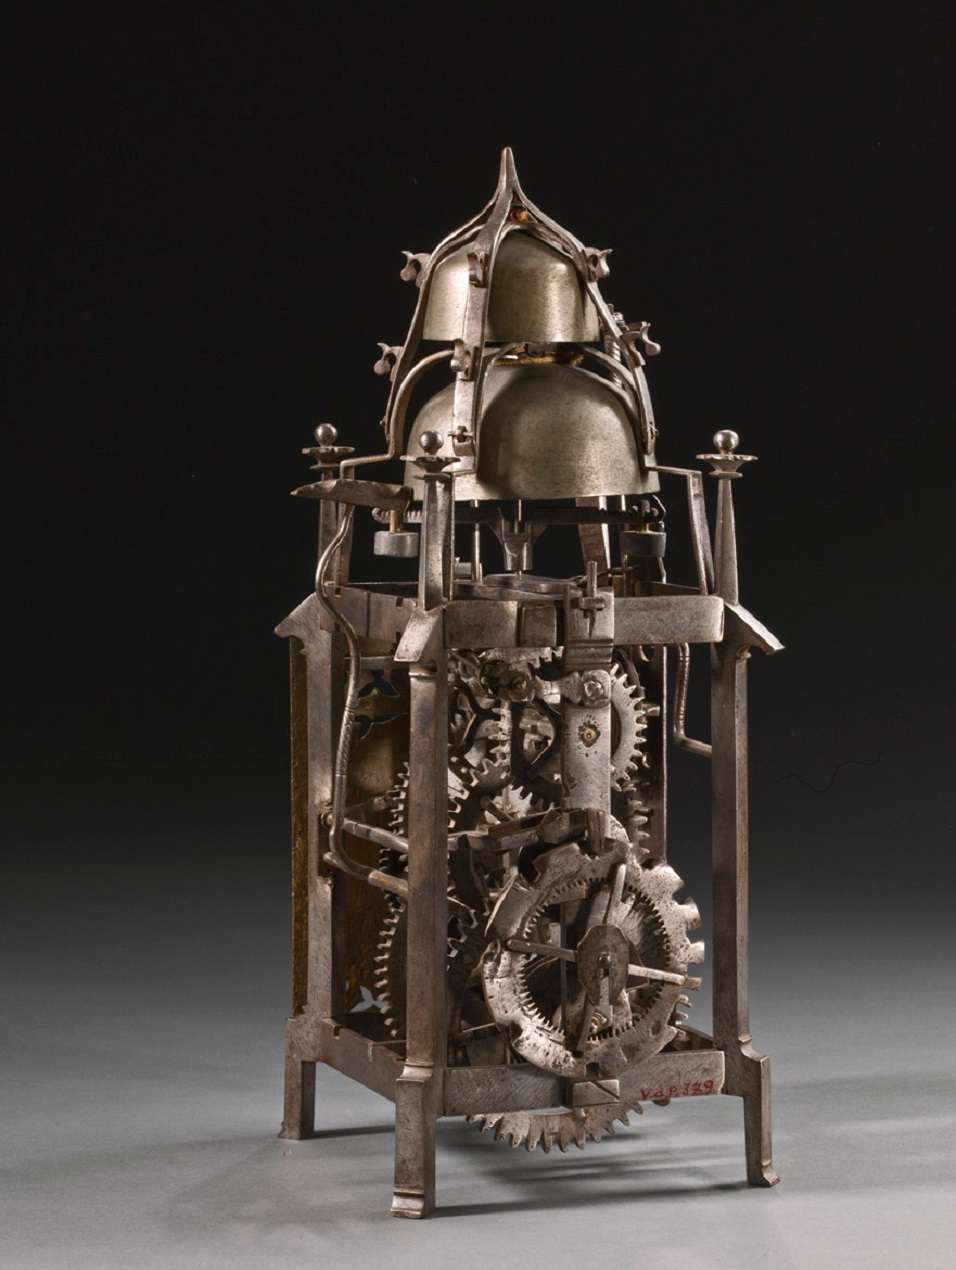 Horloge gothique à poids et foliot, Allemagne, XVI<sup>e</sup> siècle. Collection Musée royal d'Art et d'Histoire, Belgique. © Musées royaux d'Art et d'Histoire.